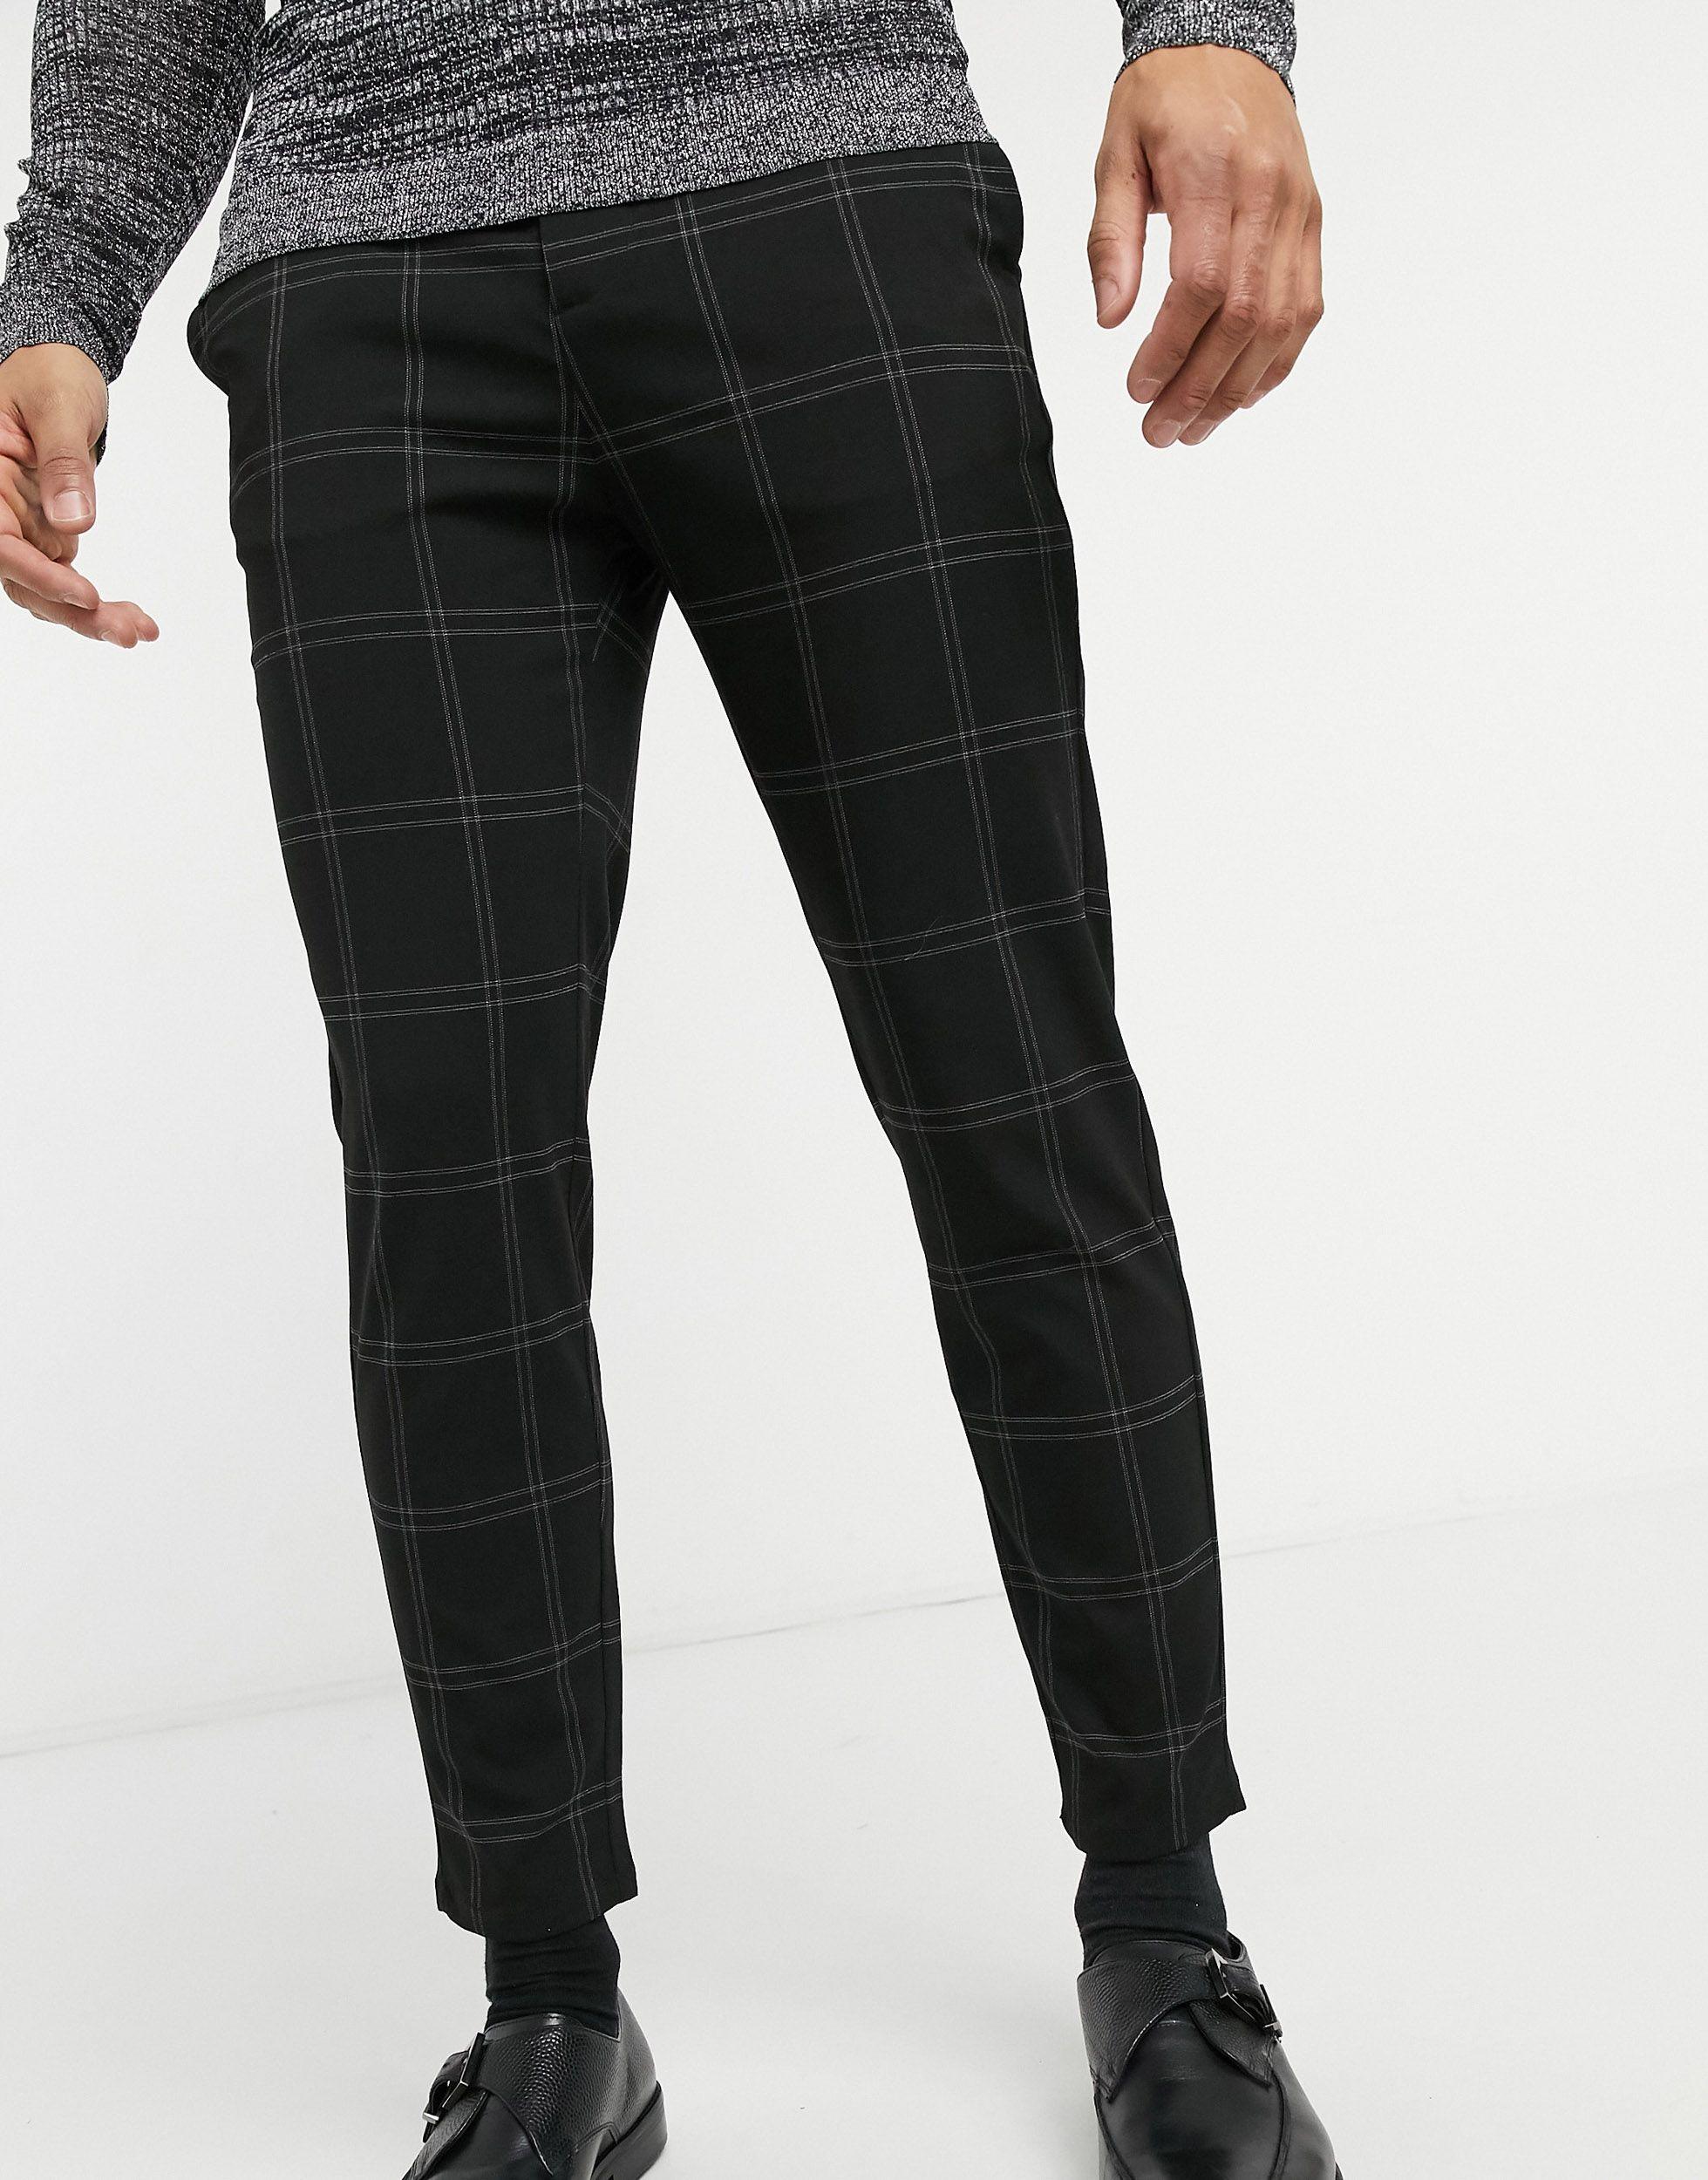 Buy Black Trousers & Pants for Women by Uniquest Online | Ajio.com